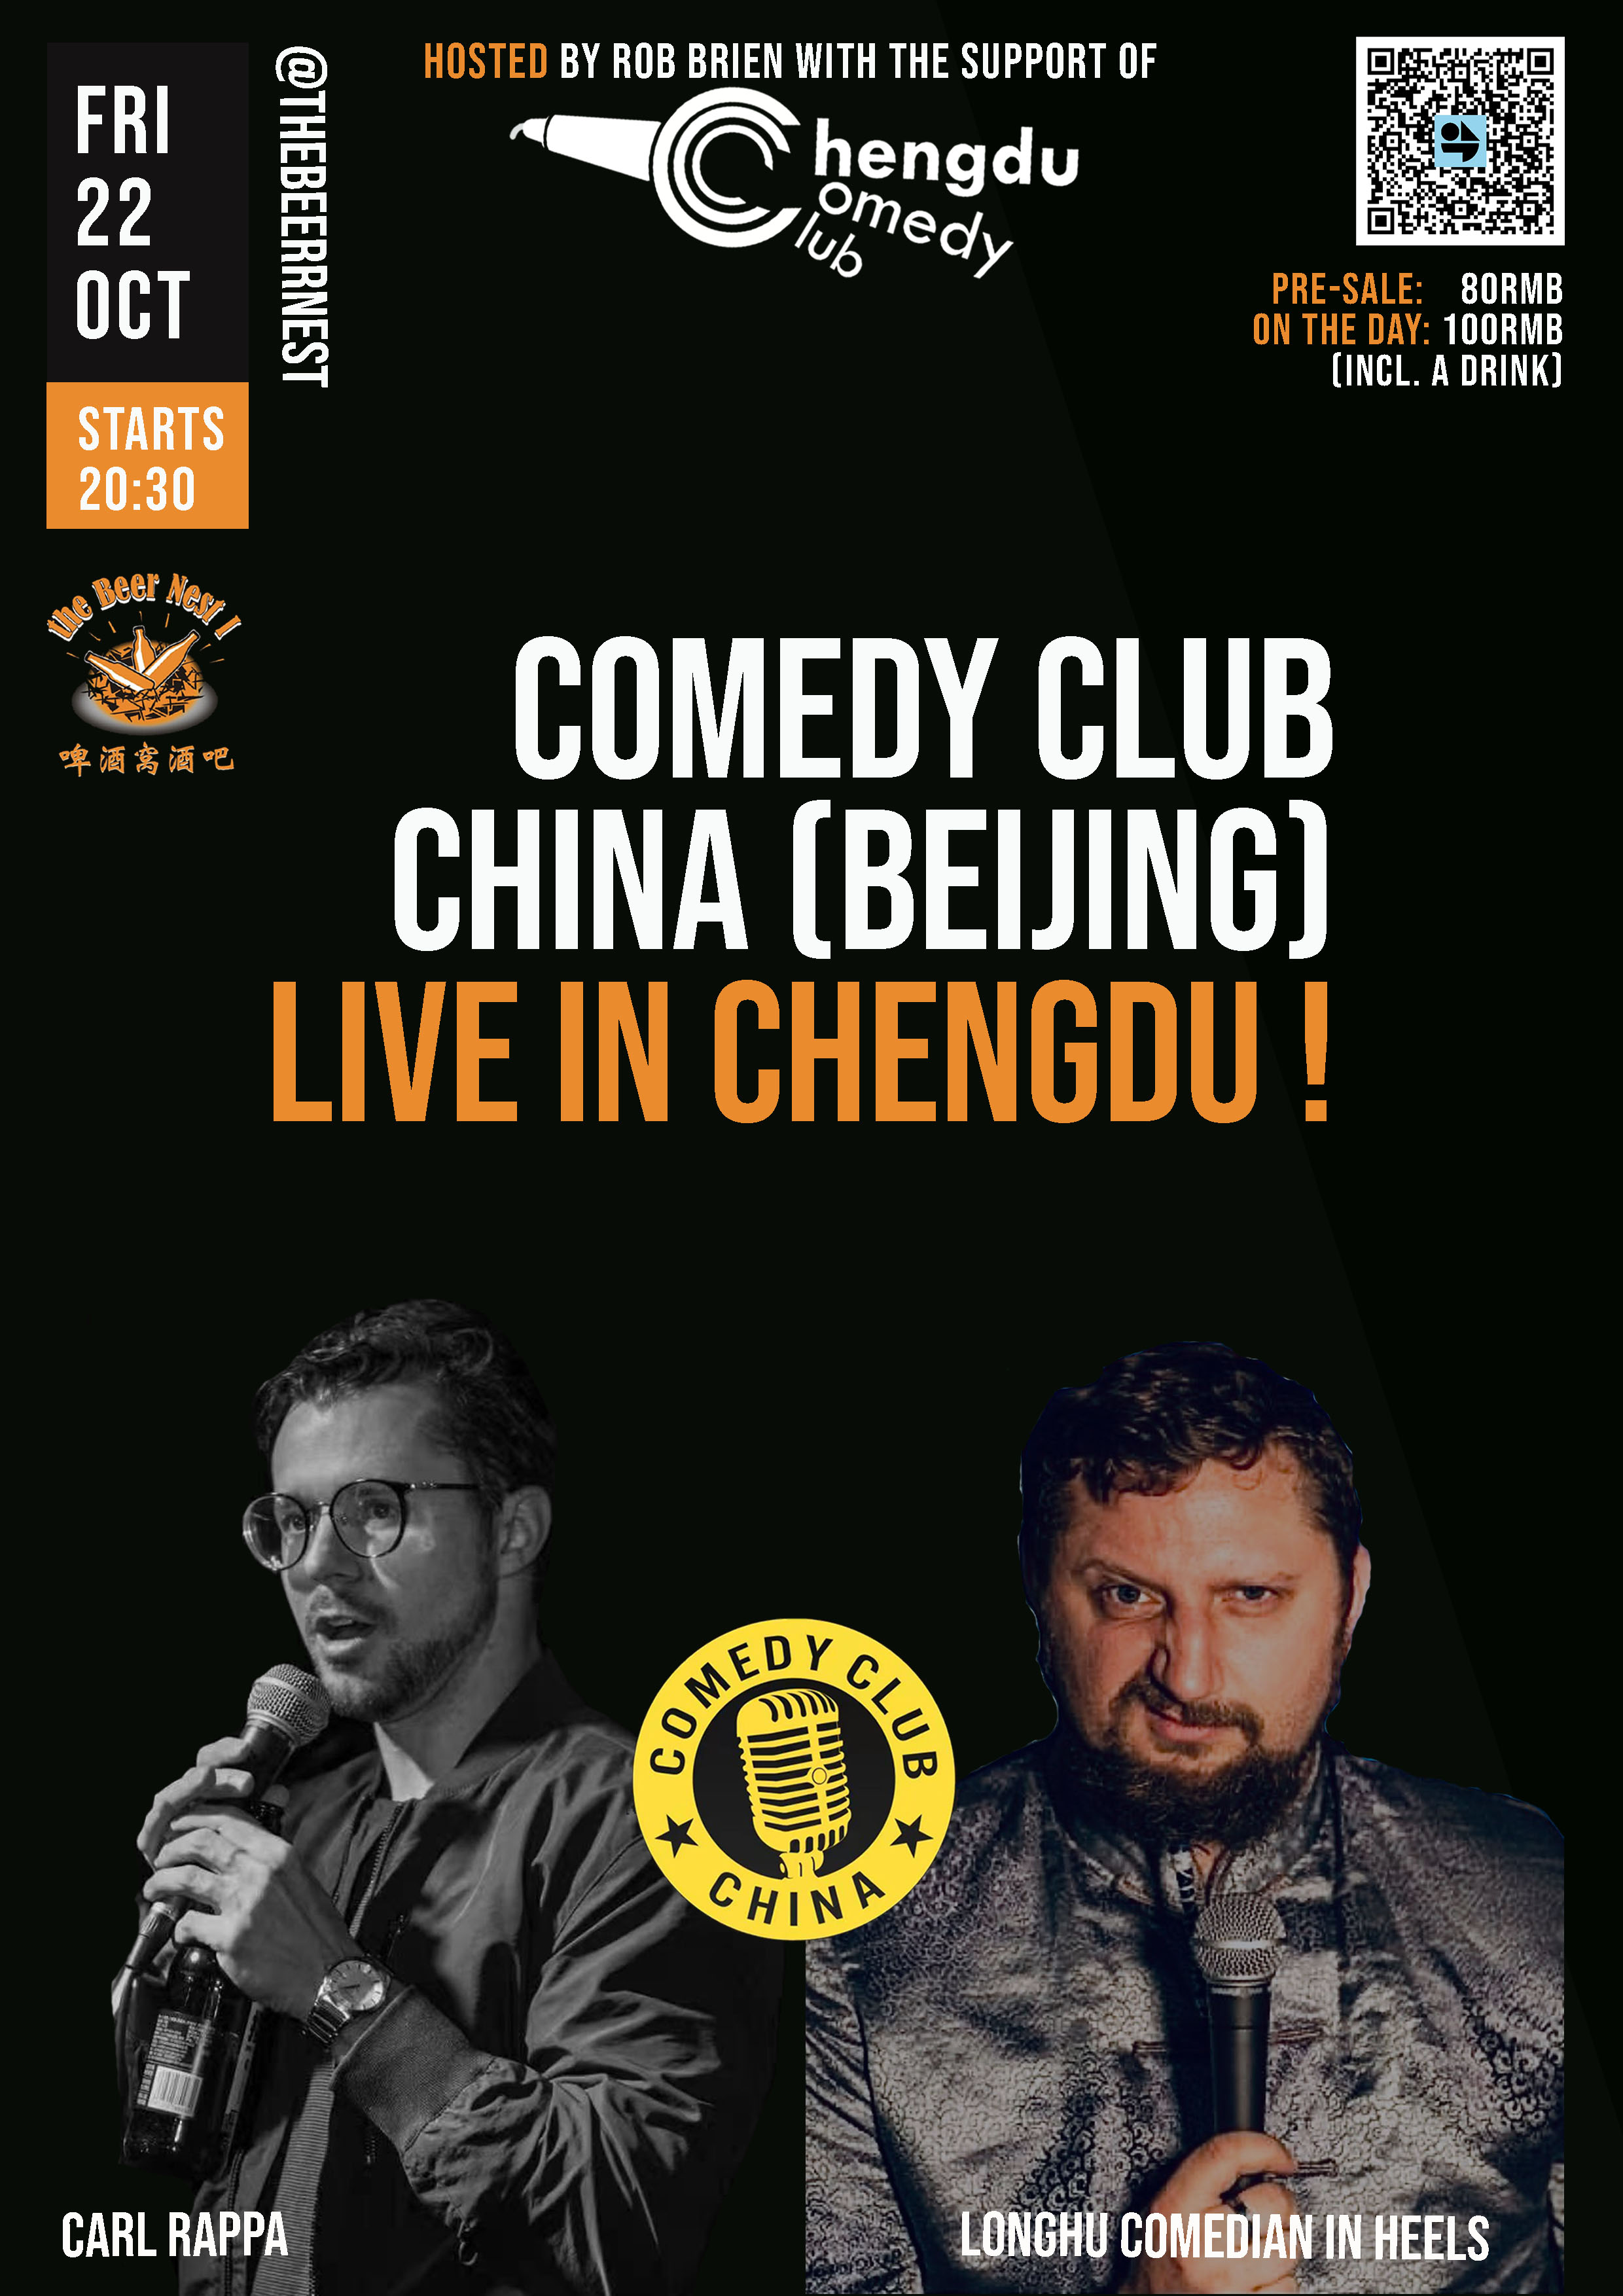 Comedy Club China Beijing Live chengdu expat 1